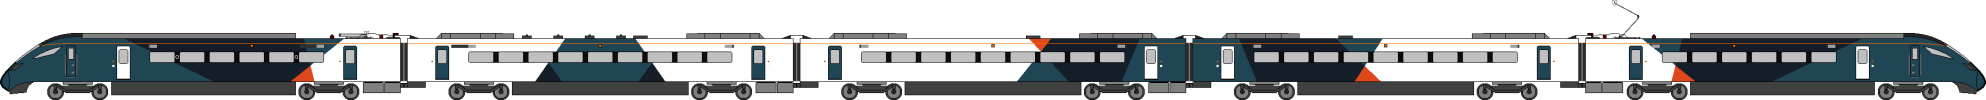 Avanti Class 805 w-pantograph.png